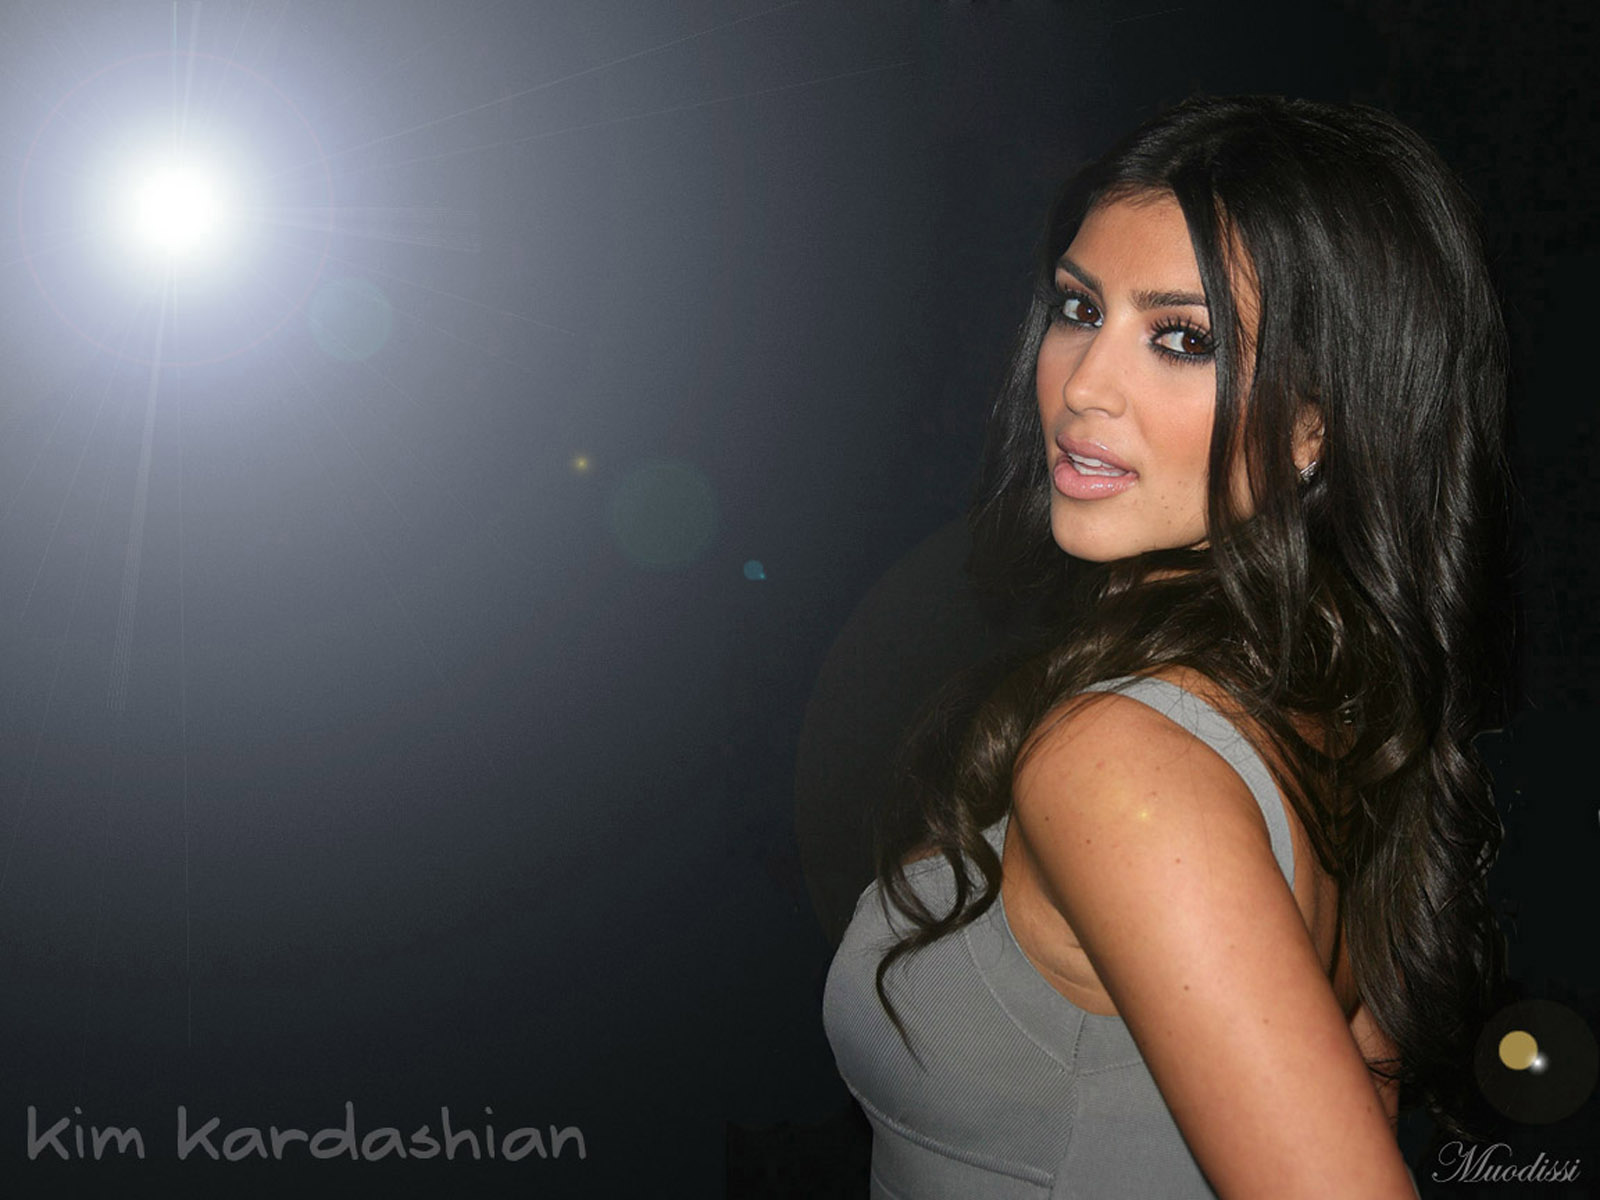 Kim Kardashian Wallpaper - Kim Kardashian Back Pose - HD Wallpaper 